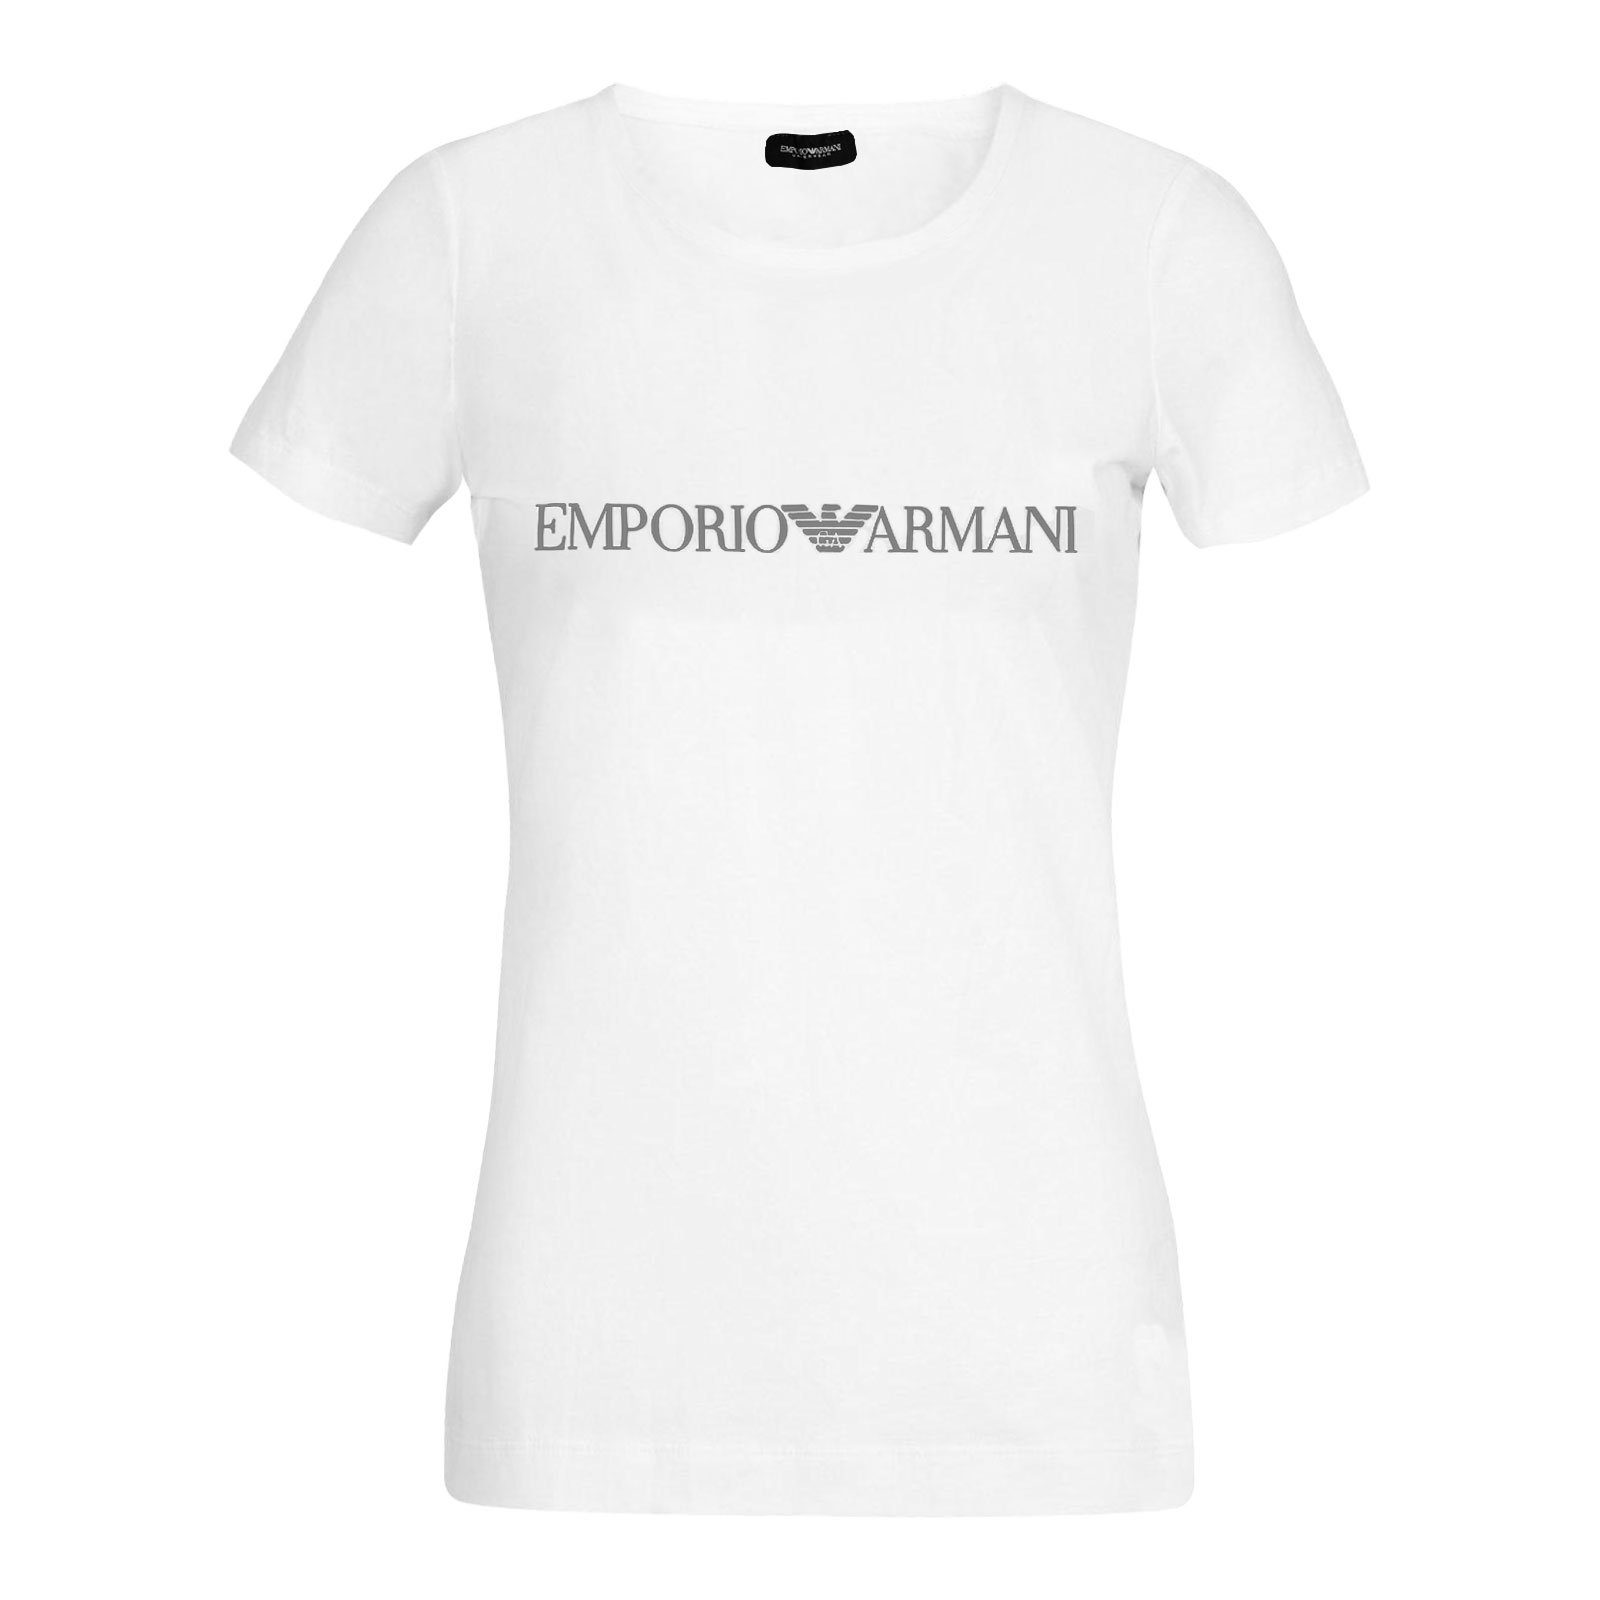 Brust Markenschriftzug auf 00010 Round Loungewear-Shirt white der Armani Emporio mit Neck T-Shirt